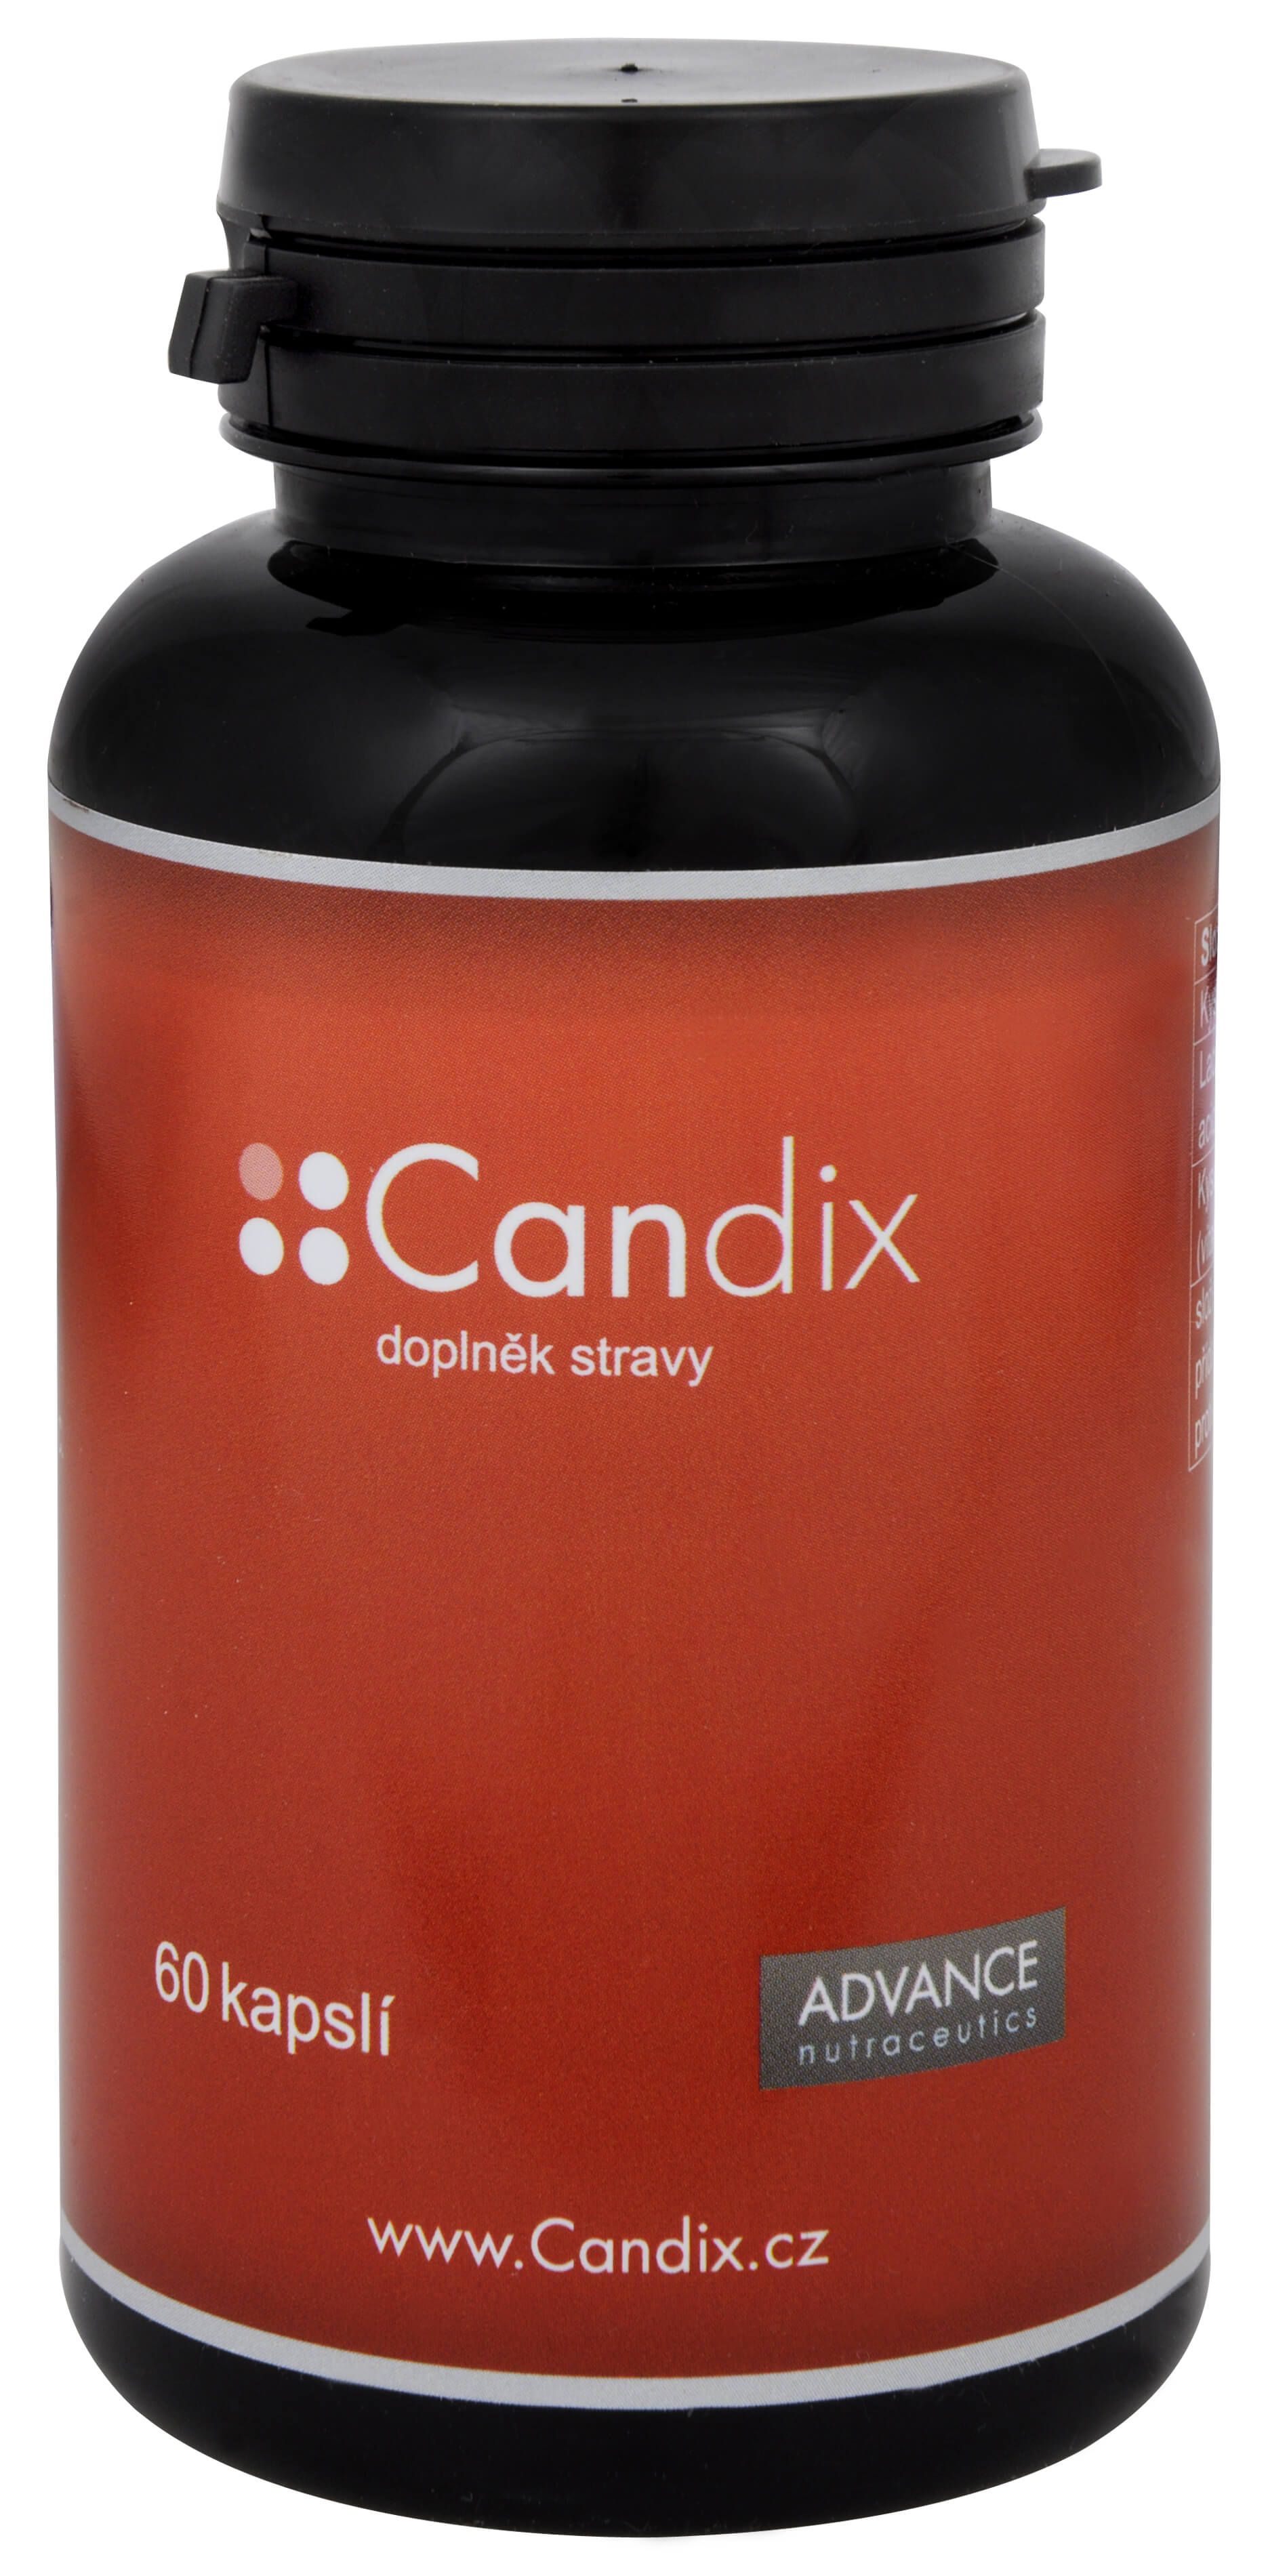 Zobrazit detail výrobku Advance nutraceutics Candix 60 kapslí + 2 měsíce na vrácení zboží